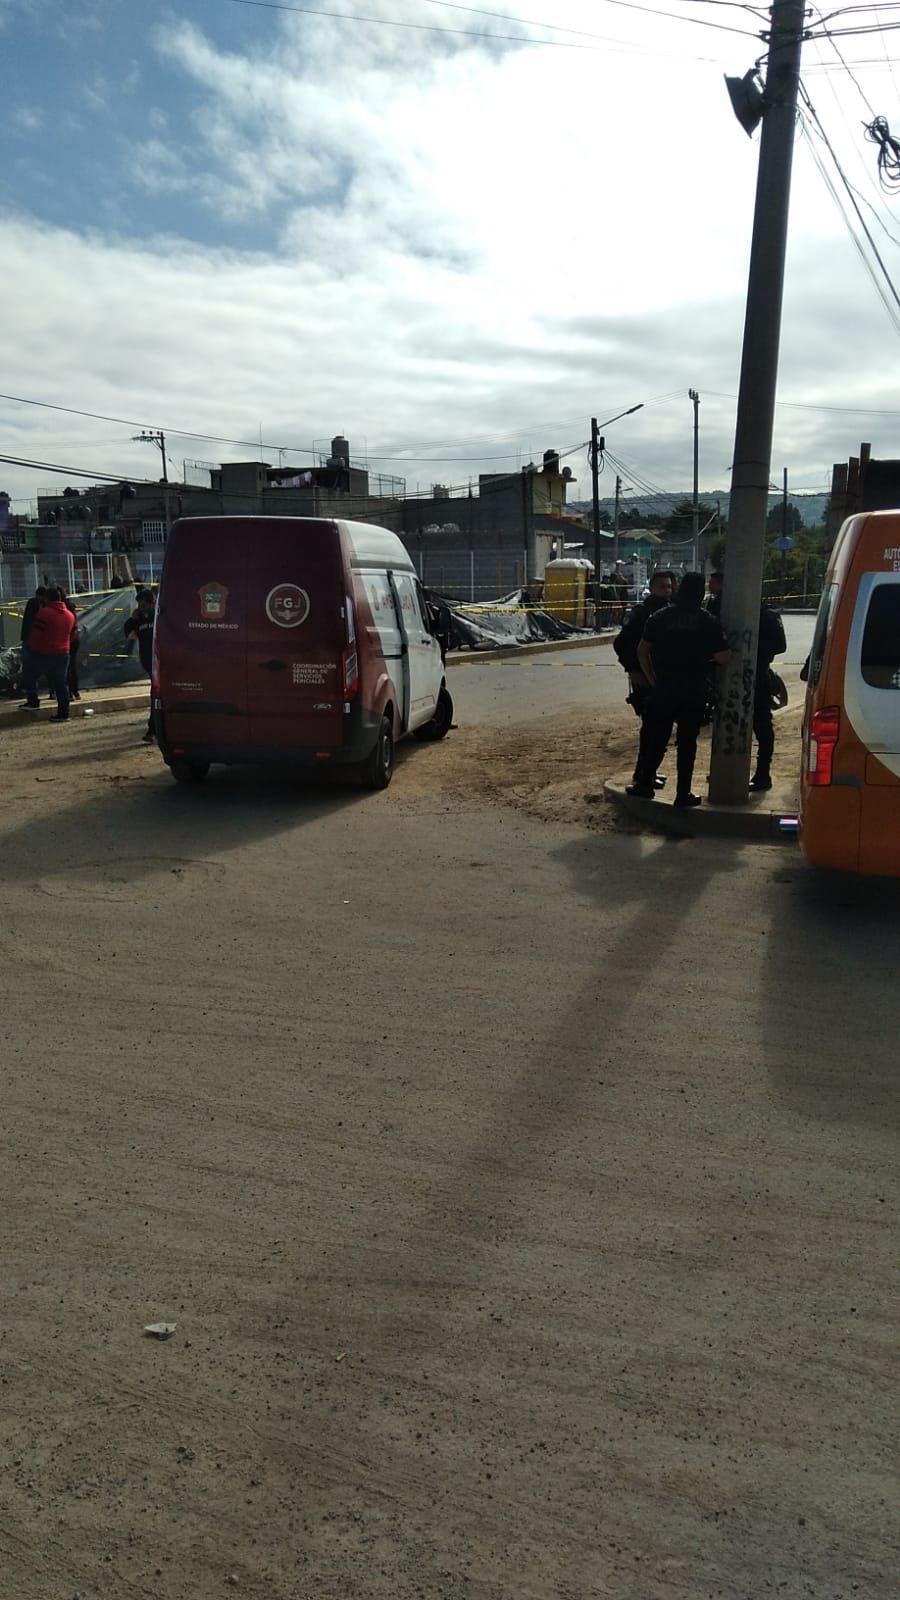 En el municipio de La Paz, la FGJEM reporta haber encontrado a una mujer sin vida en el interior de un vehiculo